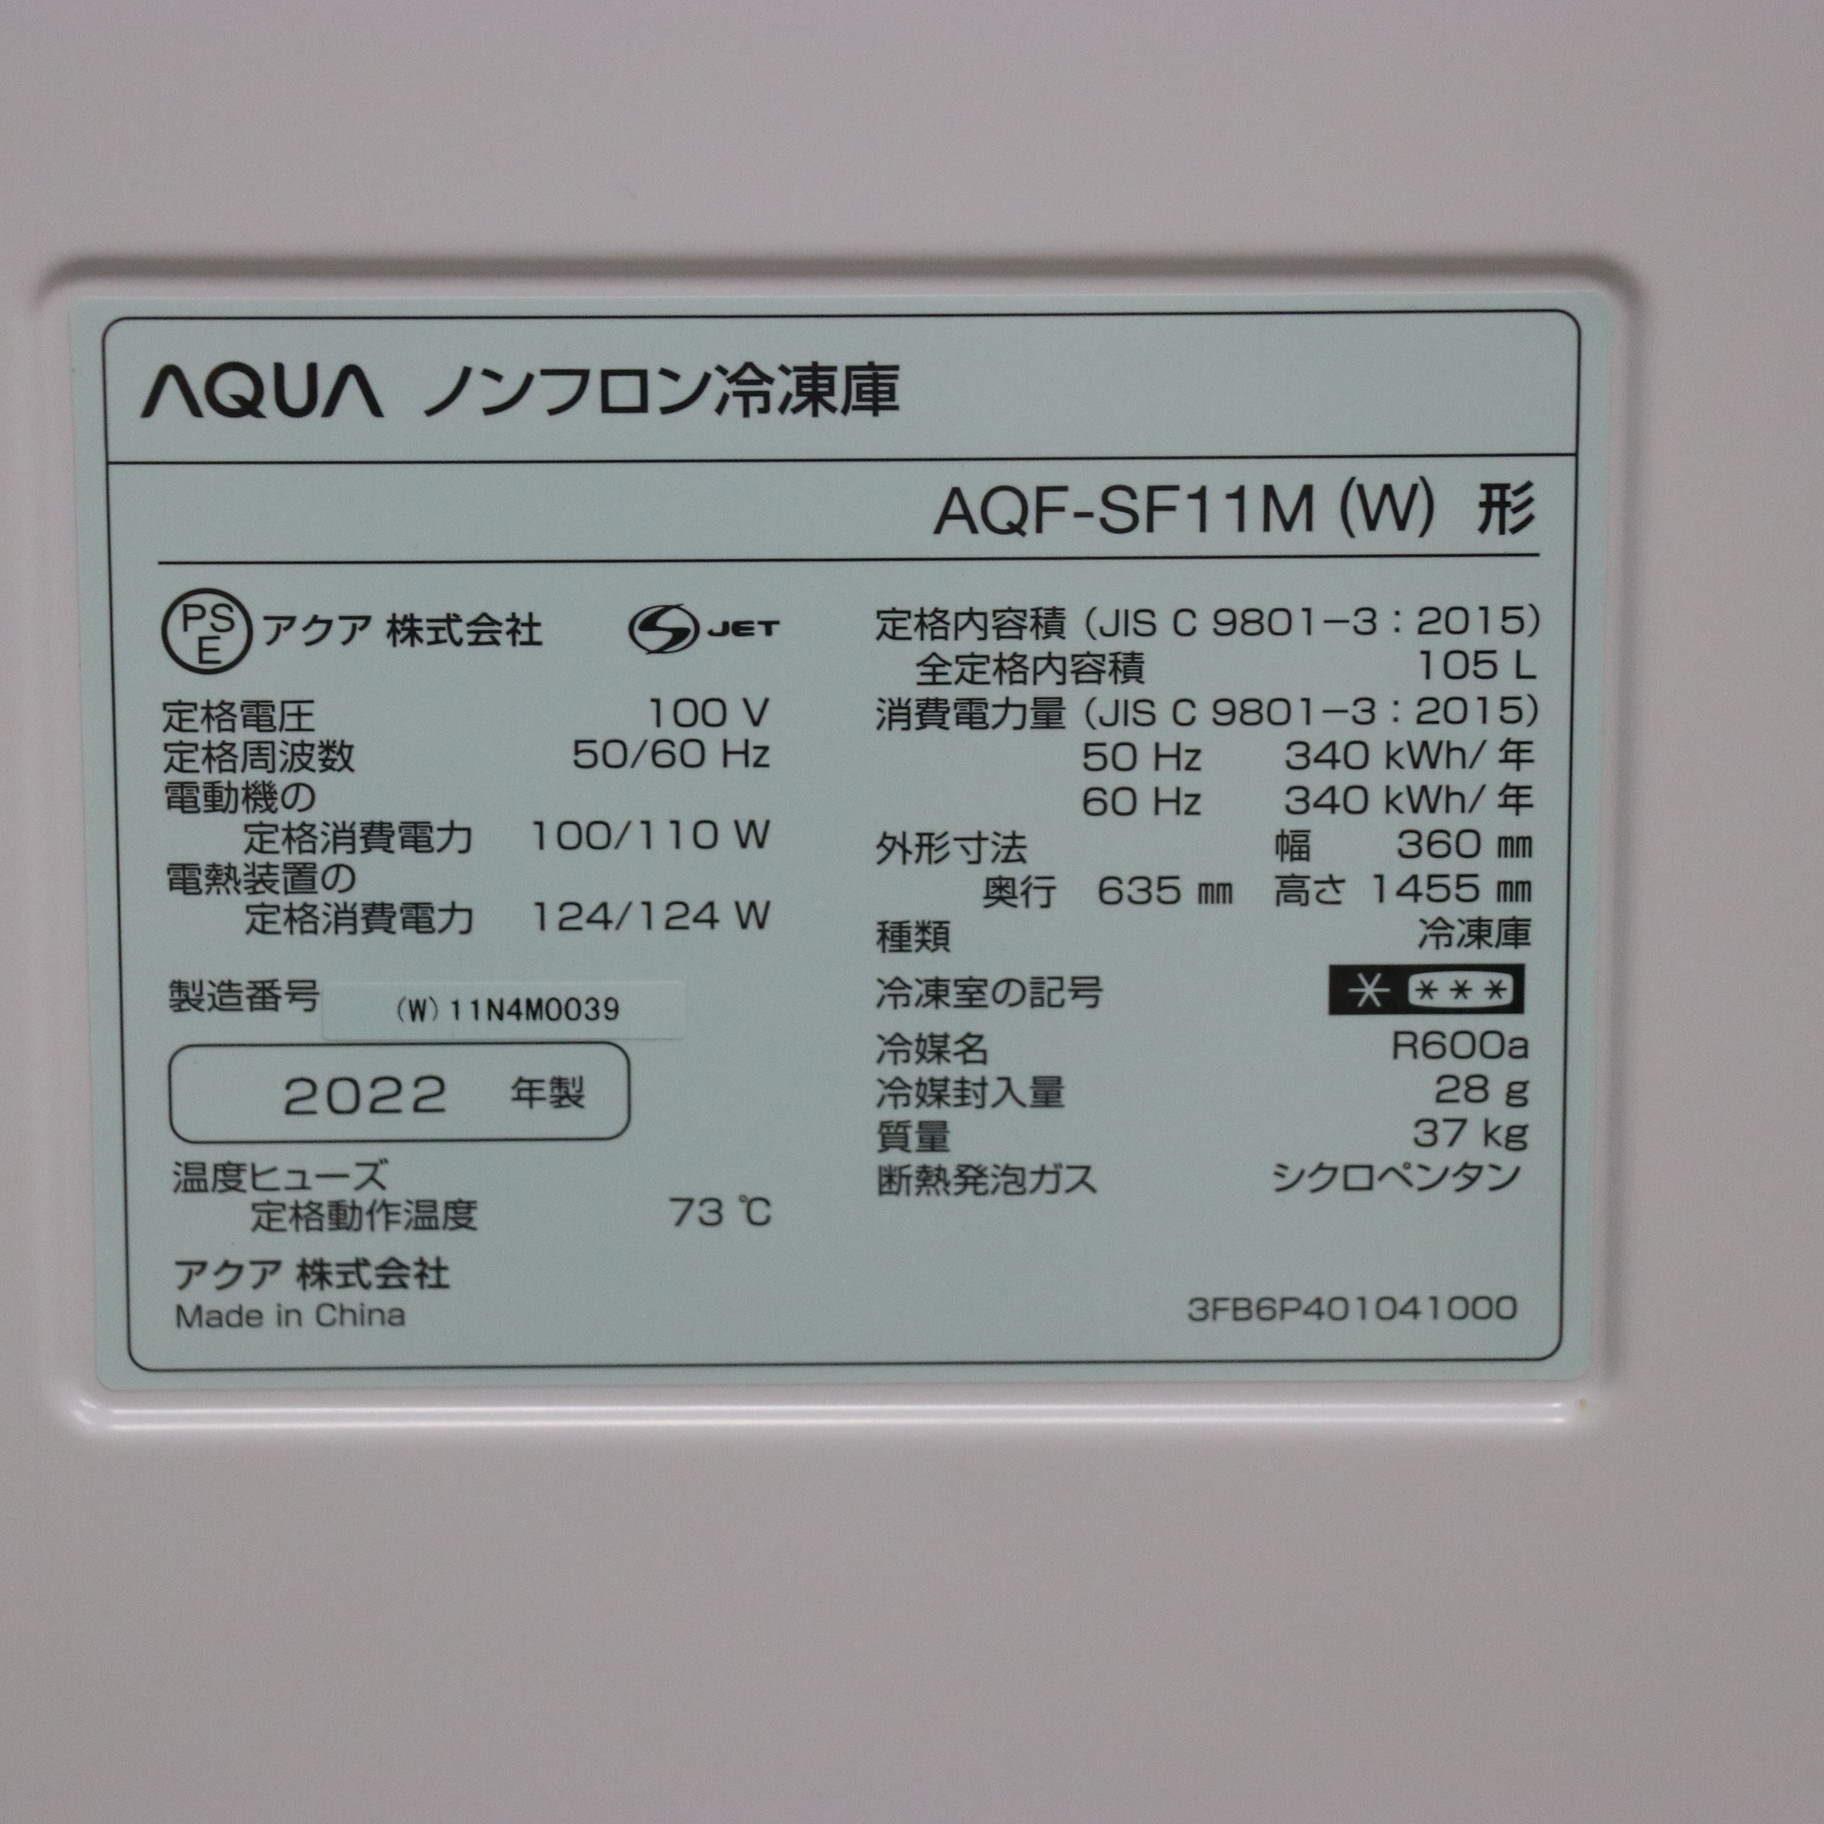 アクア 1ドア冷凍庫 AQF-SF11M フリーザー 22年製 ブラック